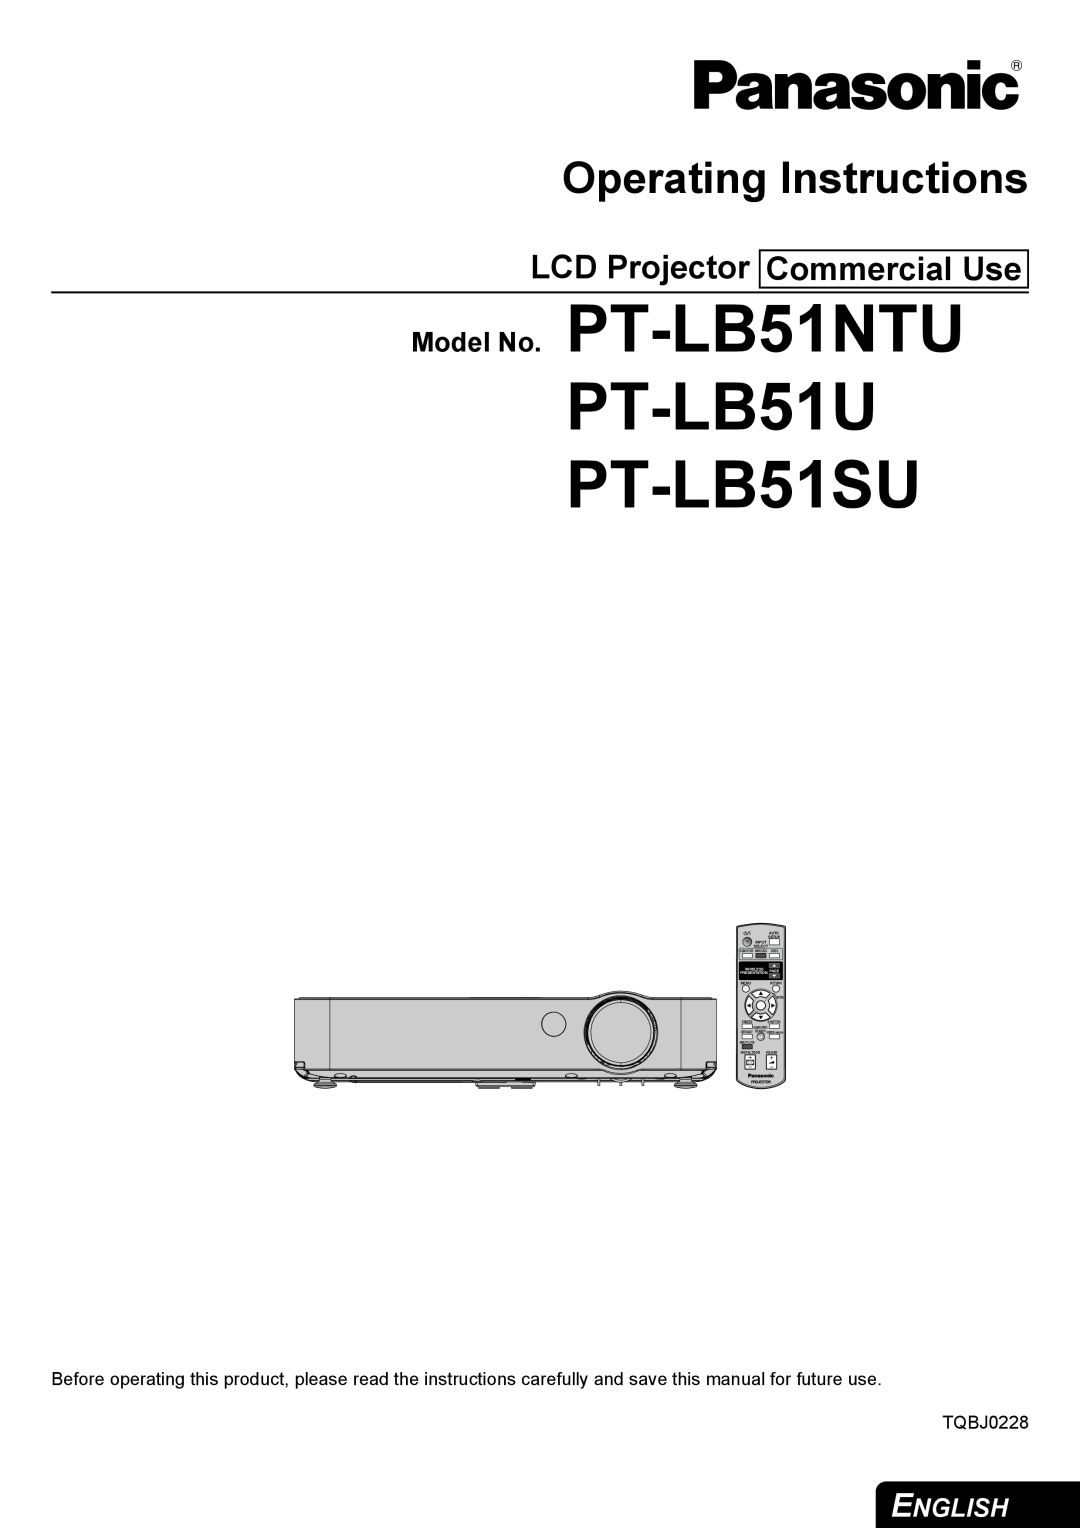 Philips manual LCD Projector Commercial Use, PT-LB51U PT-LB51SU, Operating Instructions, Model No. PT-LB51NTU, English 